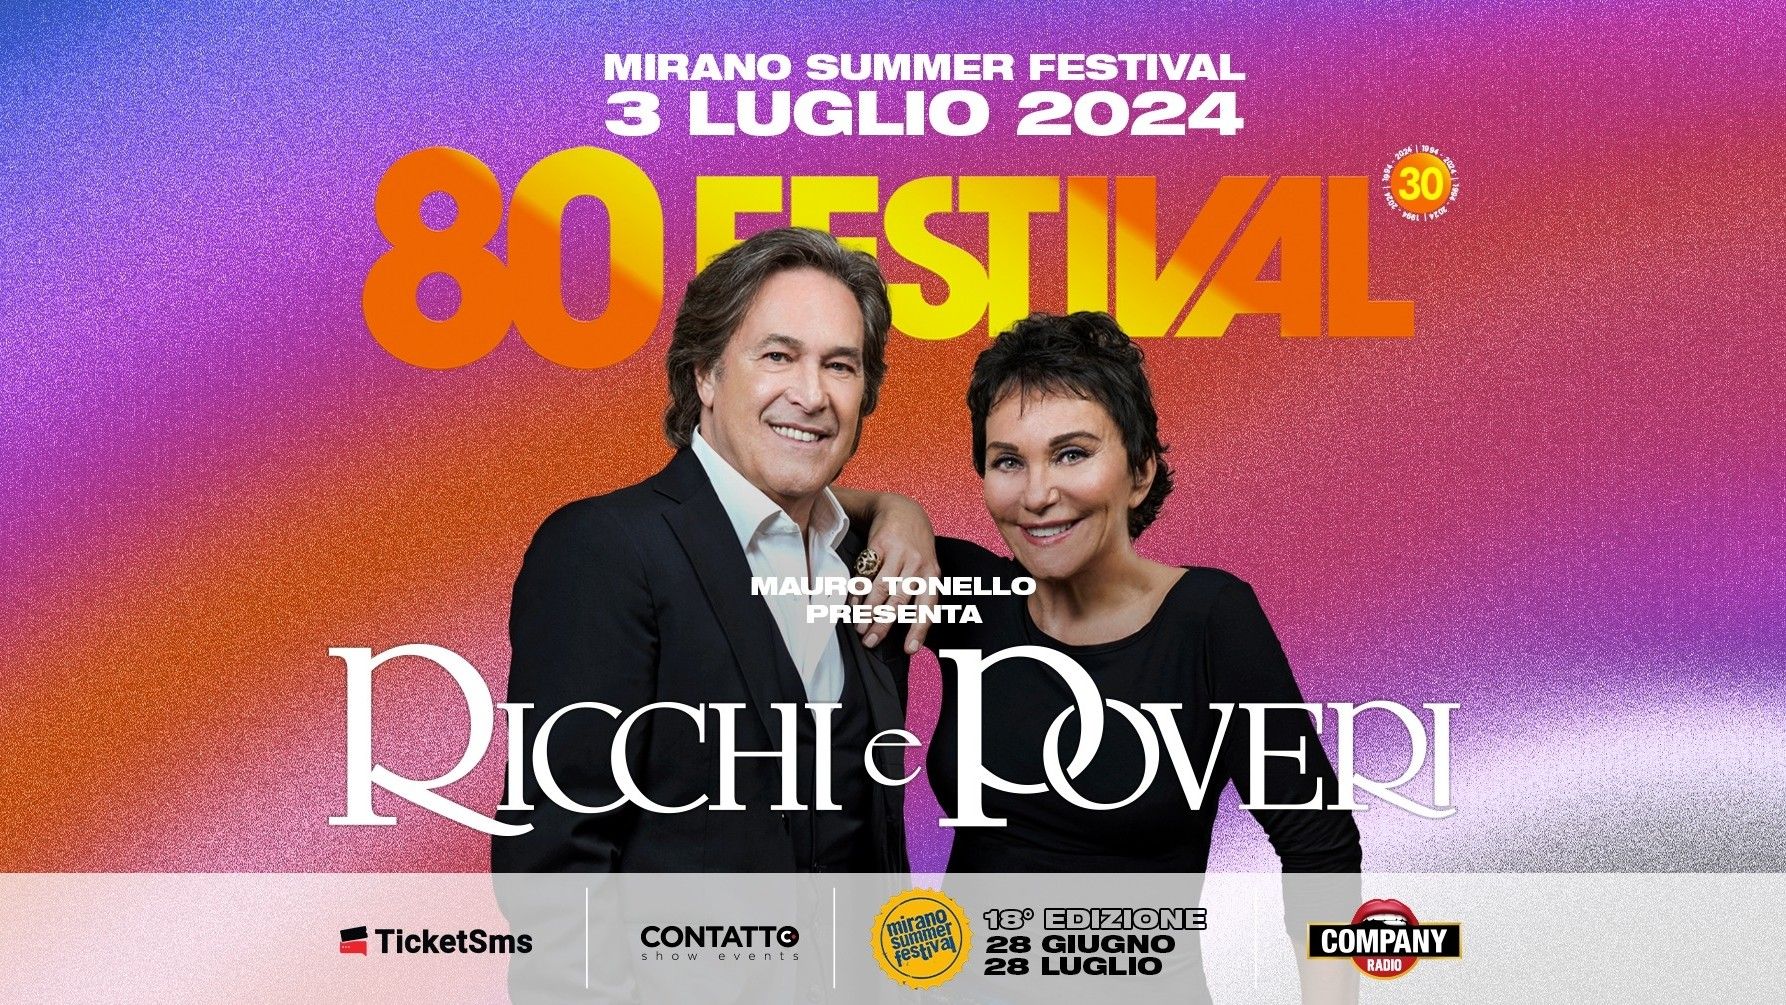 80 Festival - Ricchi E Poveri